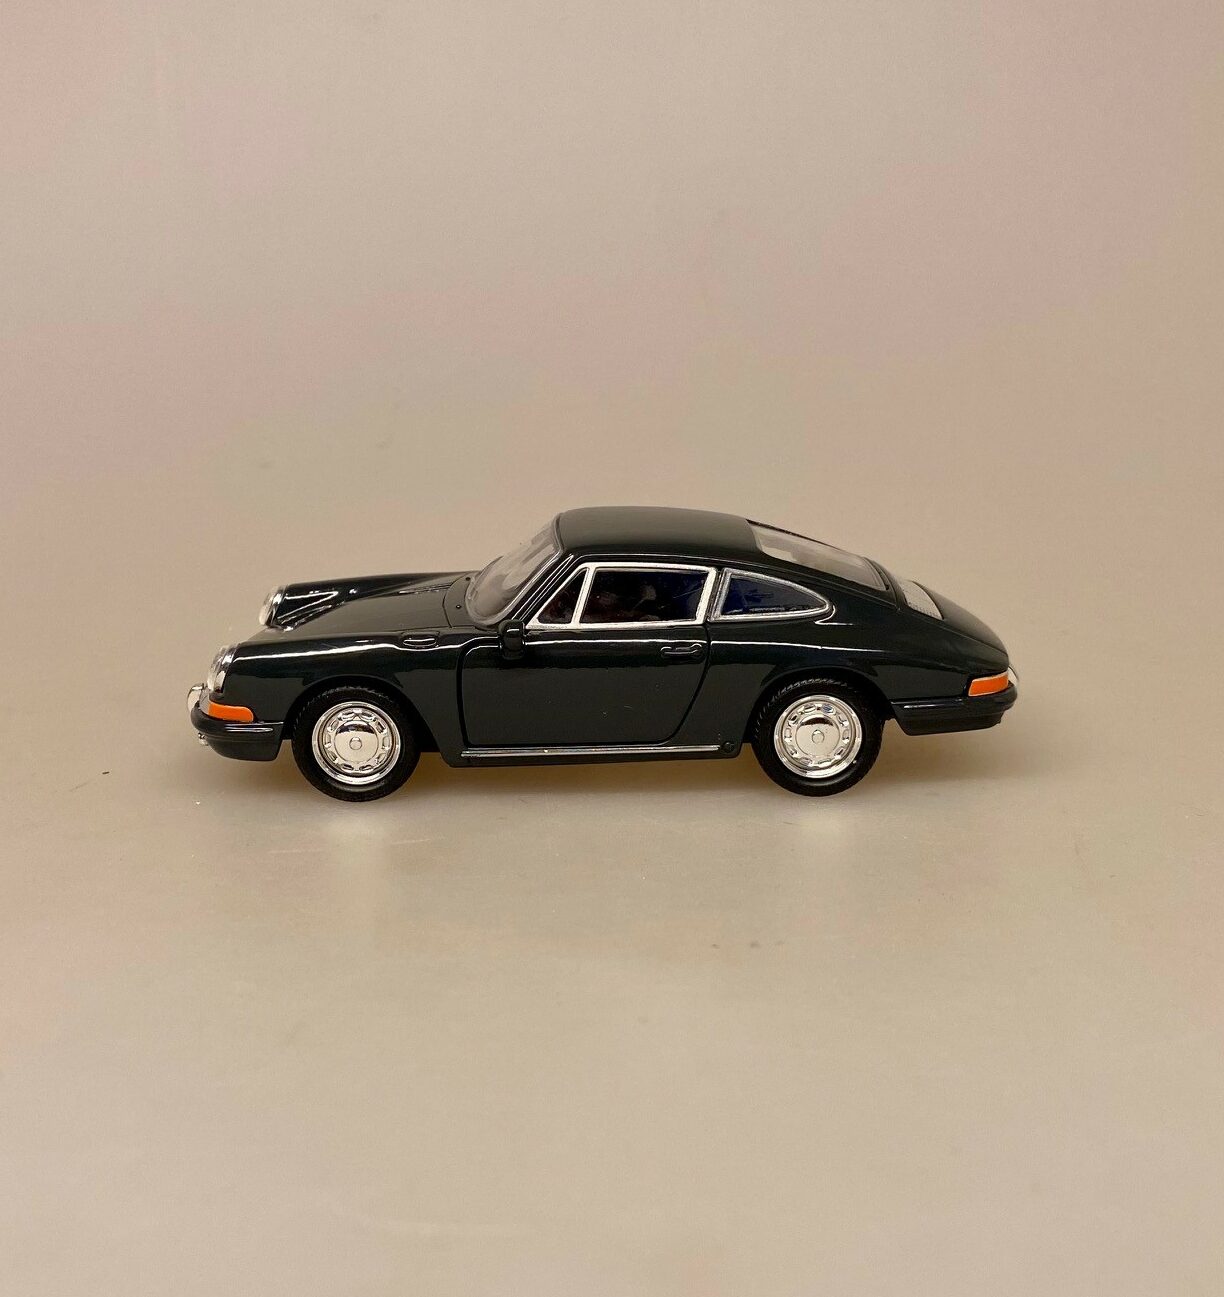 Modelbil Porsche 911 - Umbra Grøn, mørkegrøn, sort, 1965, modelbil, rød porche, lille bil, legetøj, legetøjsbil, model, biti, ribe, racerbil, kørekort, gave, symbolsk